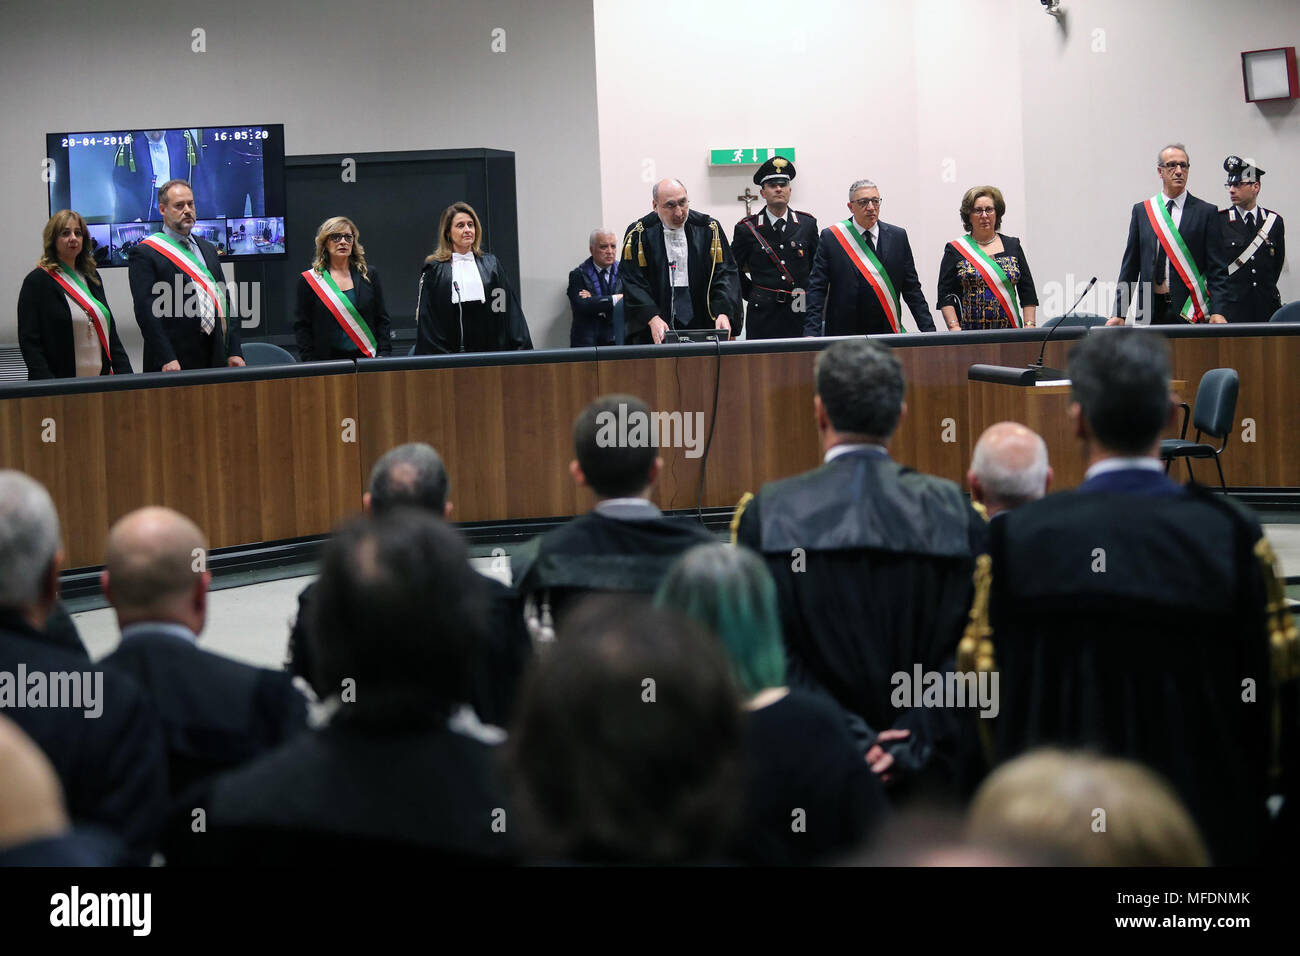 Palermo, la Corte d'Assise di Palermo emette la sentenza sulla trattativa Stato Mafia avvenuta negli anni '90. Condanne eccellenti e assolto Nicola Mancino. Stock Photo